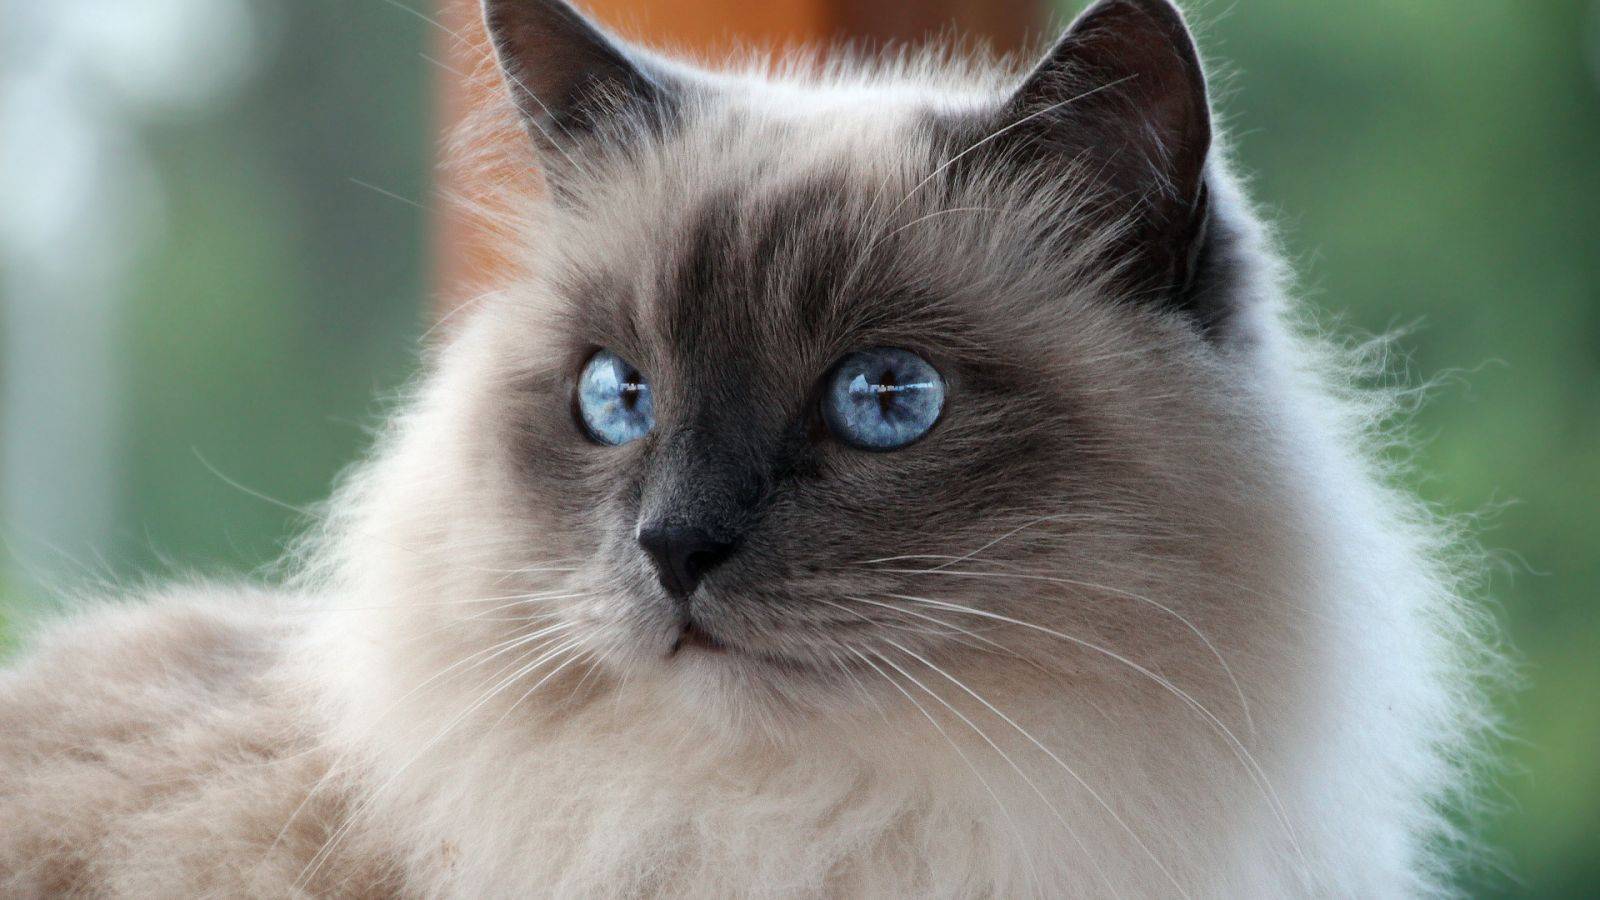 Белые кошки с голубыми глазами: фото кота и разновидности пород подобной внешности, уход за питомцами и их содержание